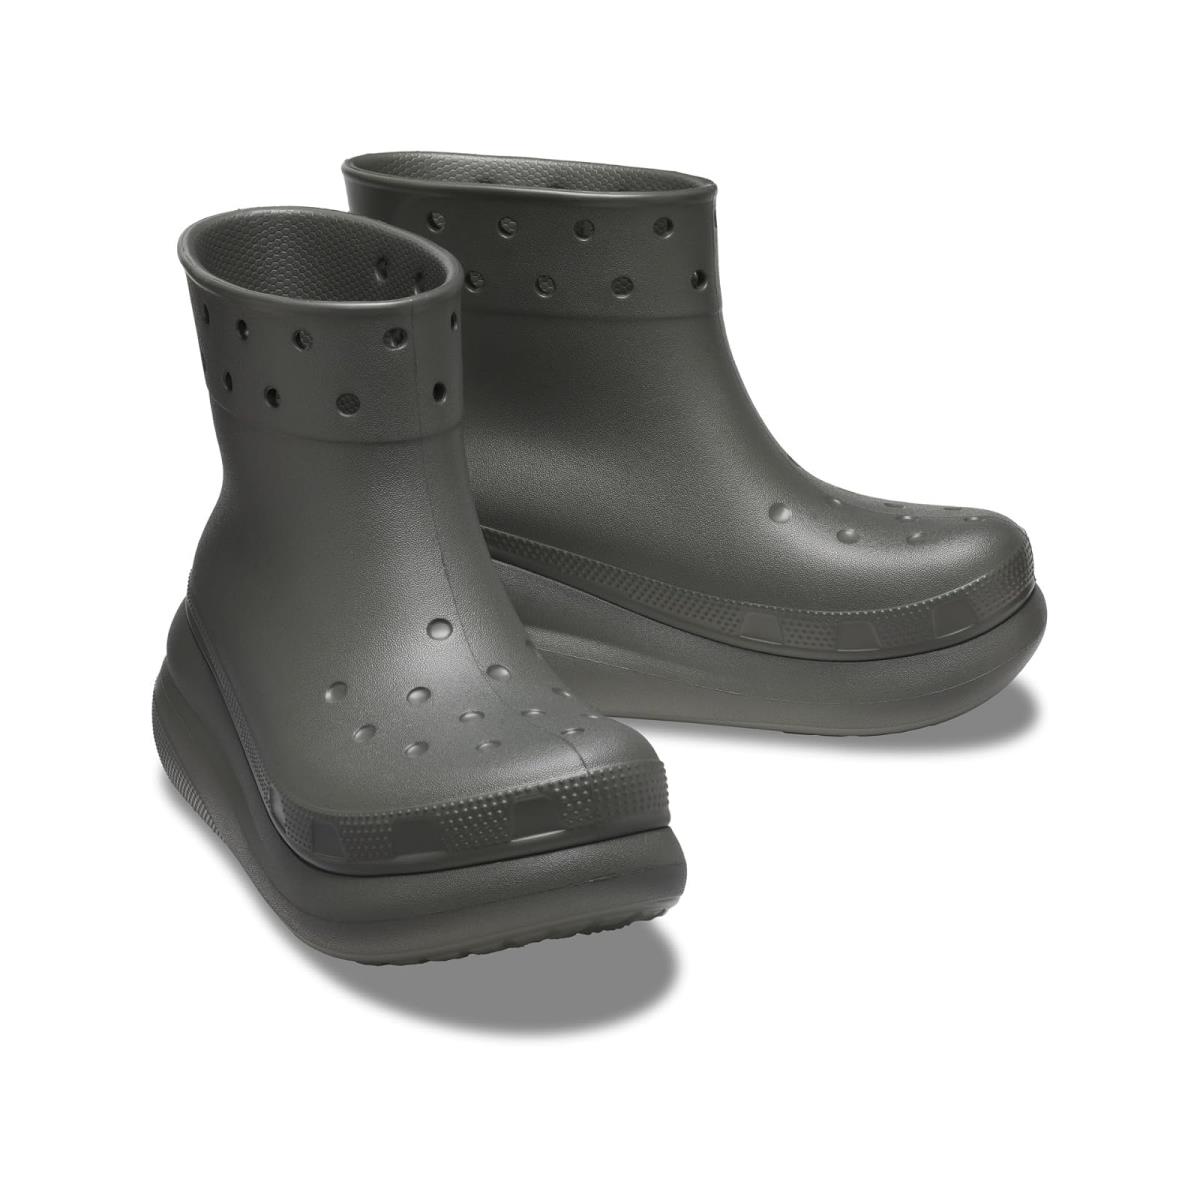 Unisex Boots Crocs Crush Rain Boot Dusty Olive